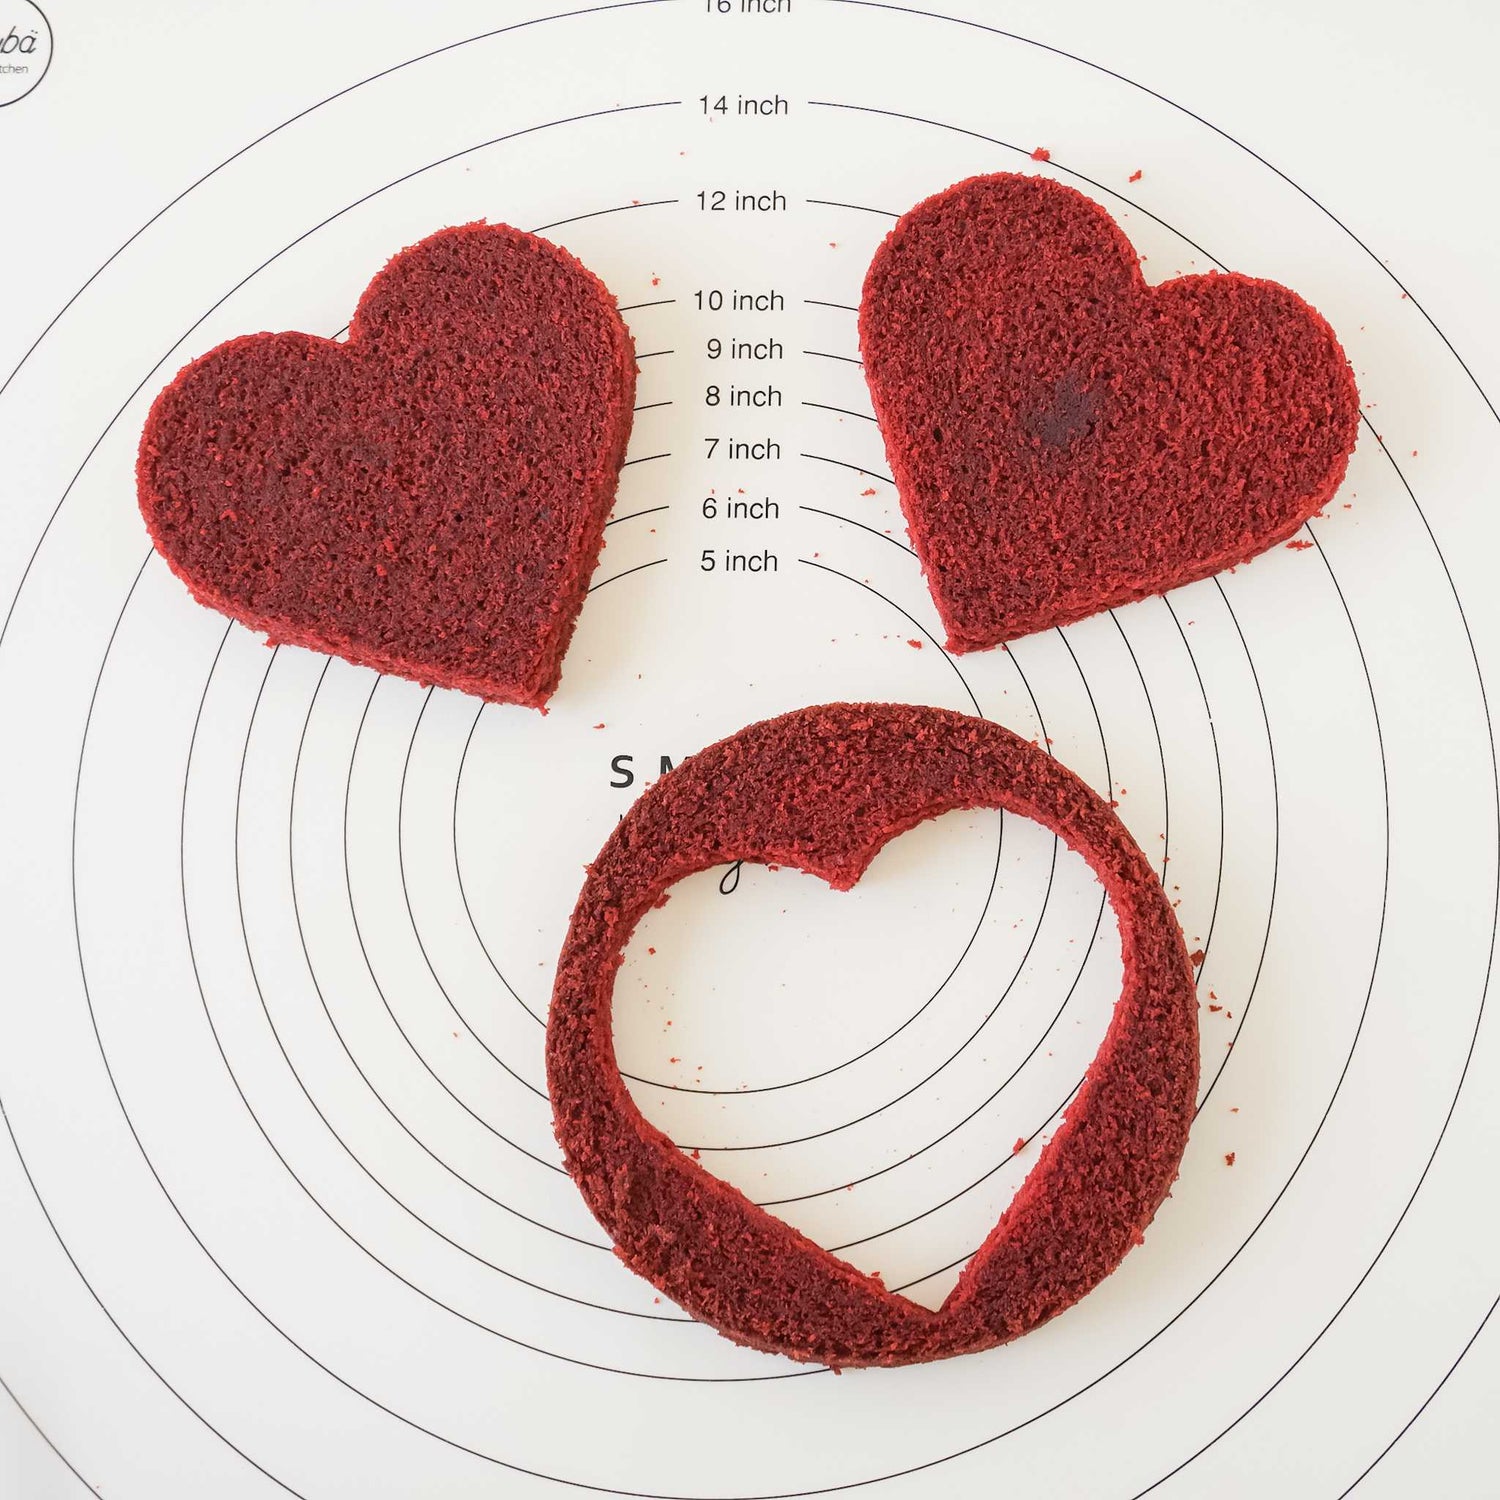 heart shaped red velvet cake